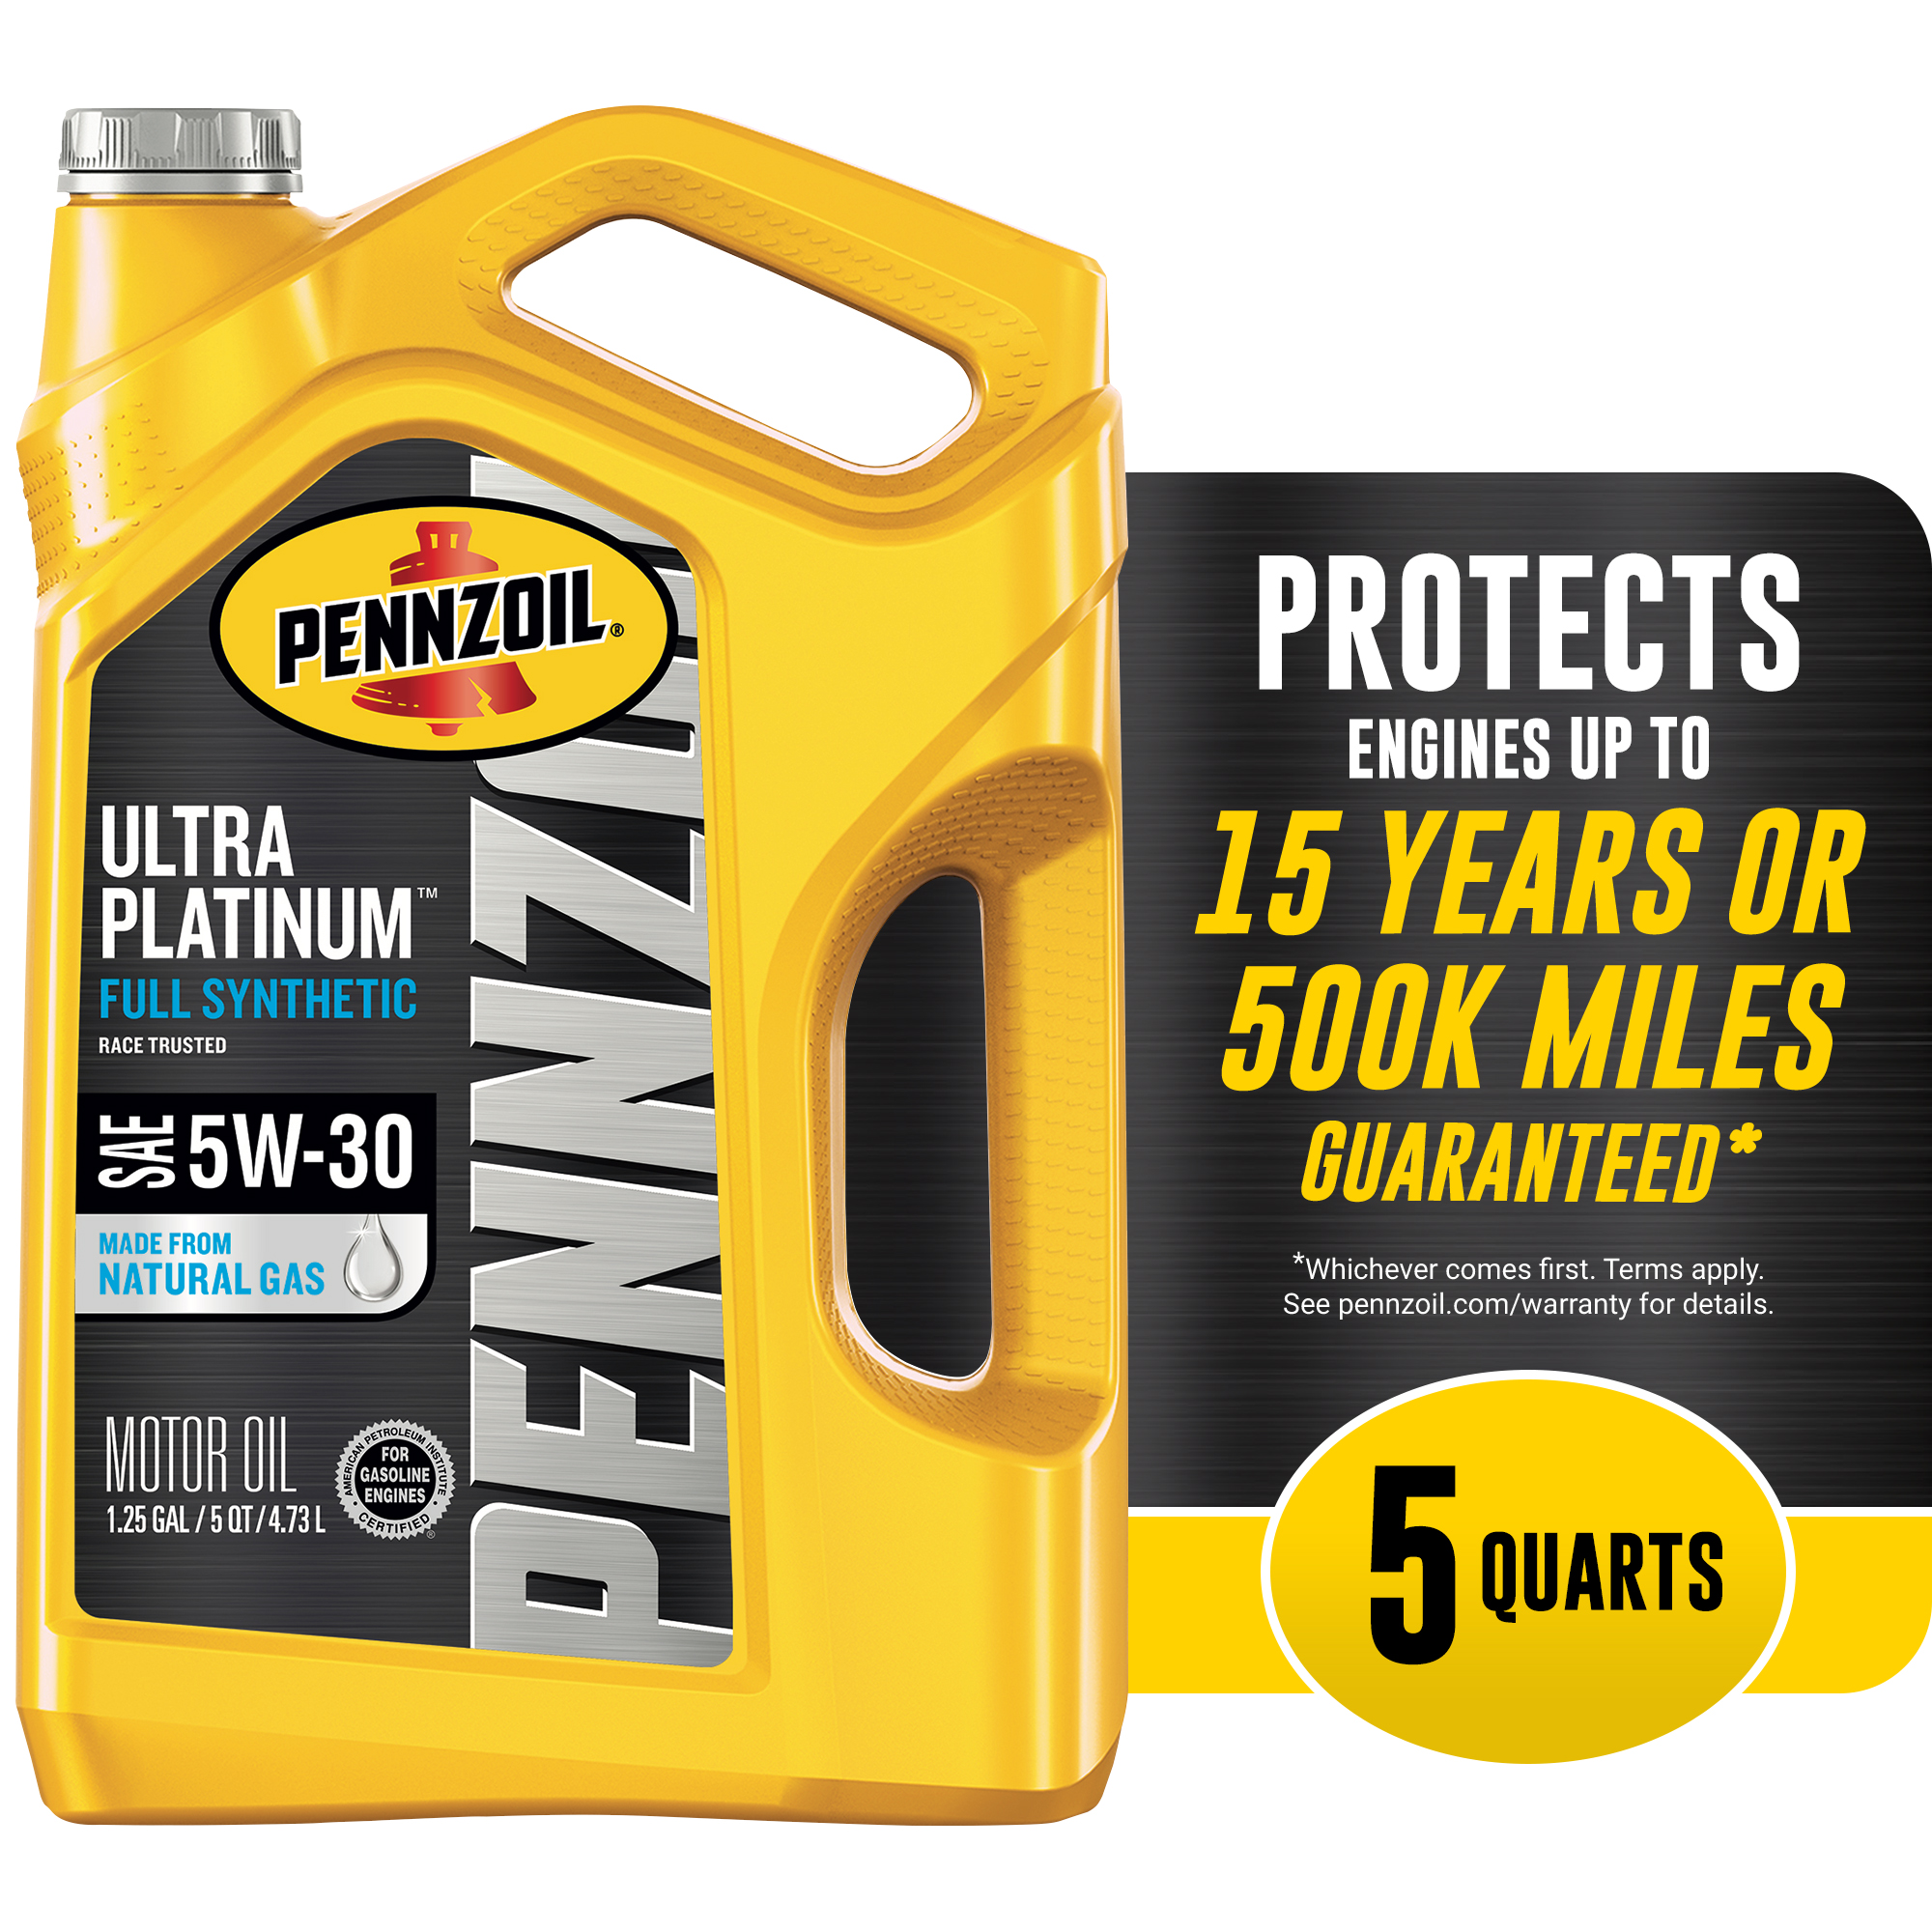 Pennzoil Ultra Platinum 5W-30 Full Synthetic Motor Oil, 5 Quart - image 1 of 7